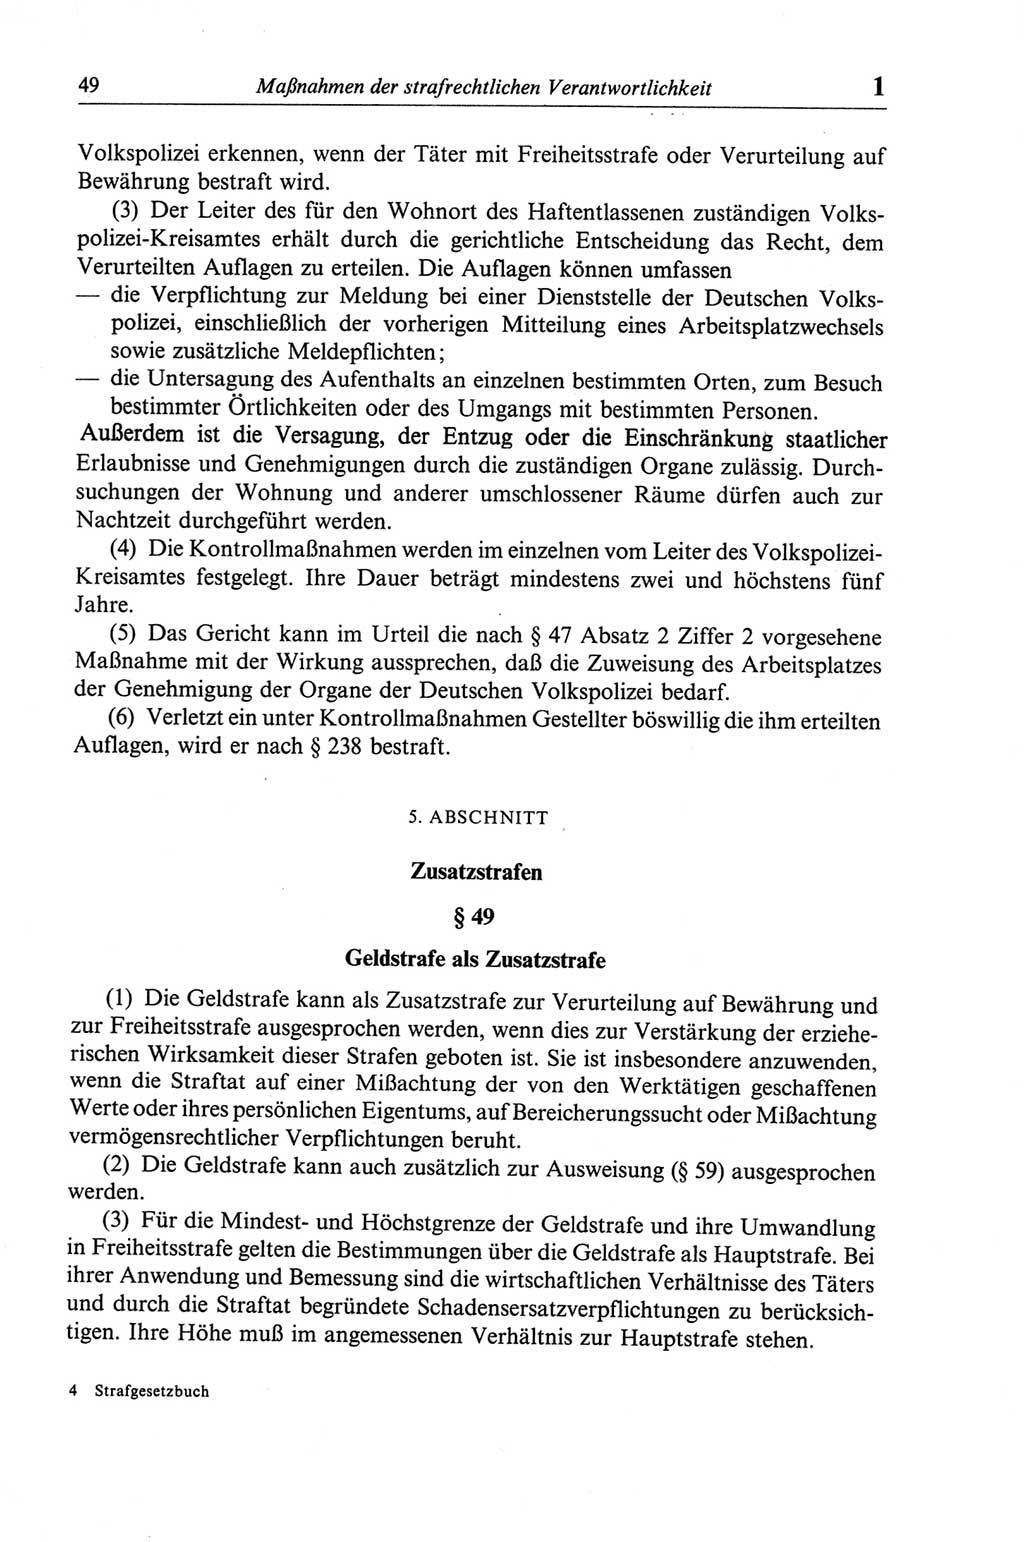 Strafgesetzbuch (StGB) der Deutschen Demokratischen Republik (DDR) und angrenzende Gesetze und Bestimmungen 1968, Seite 49 (StGB Ges. Best. DDR 1968, S. 49)